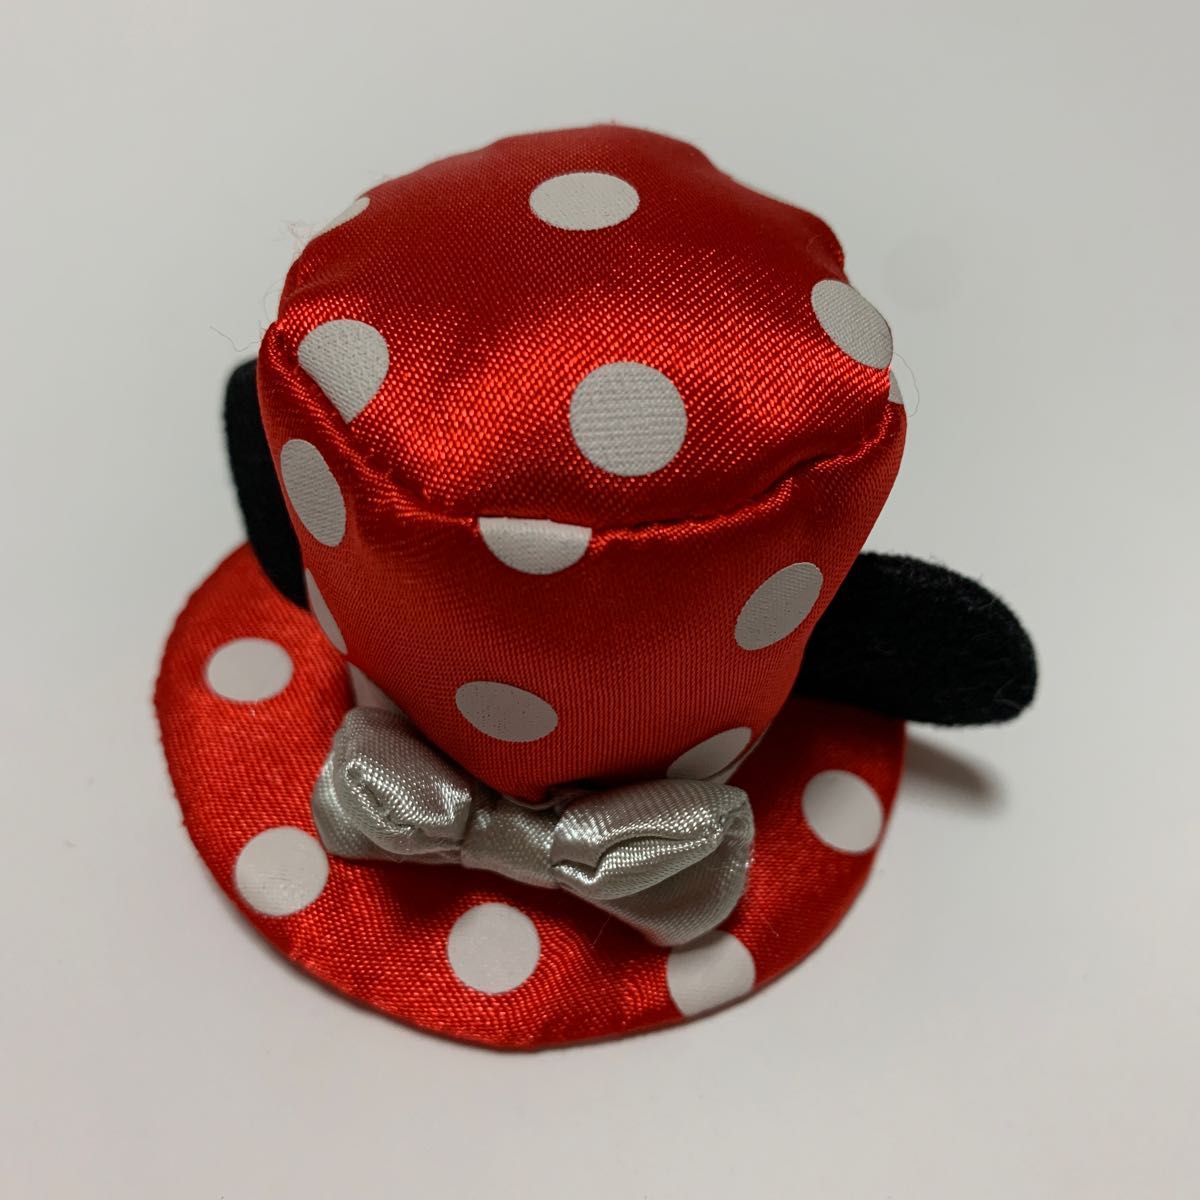 ディズニー ミニーマウス ヘアピン 赤 帽子 ハット リボン付き Disney